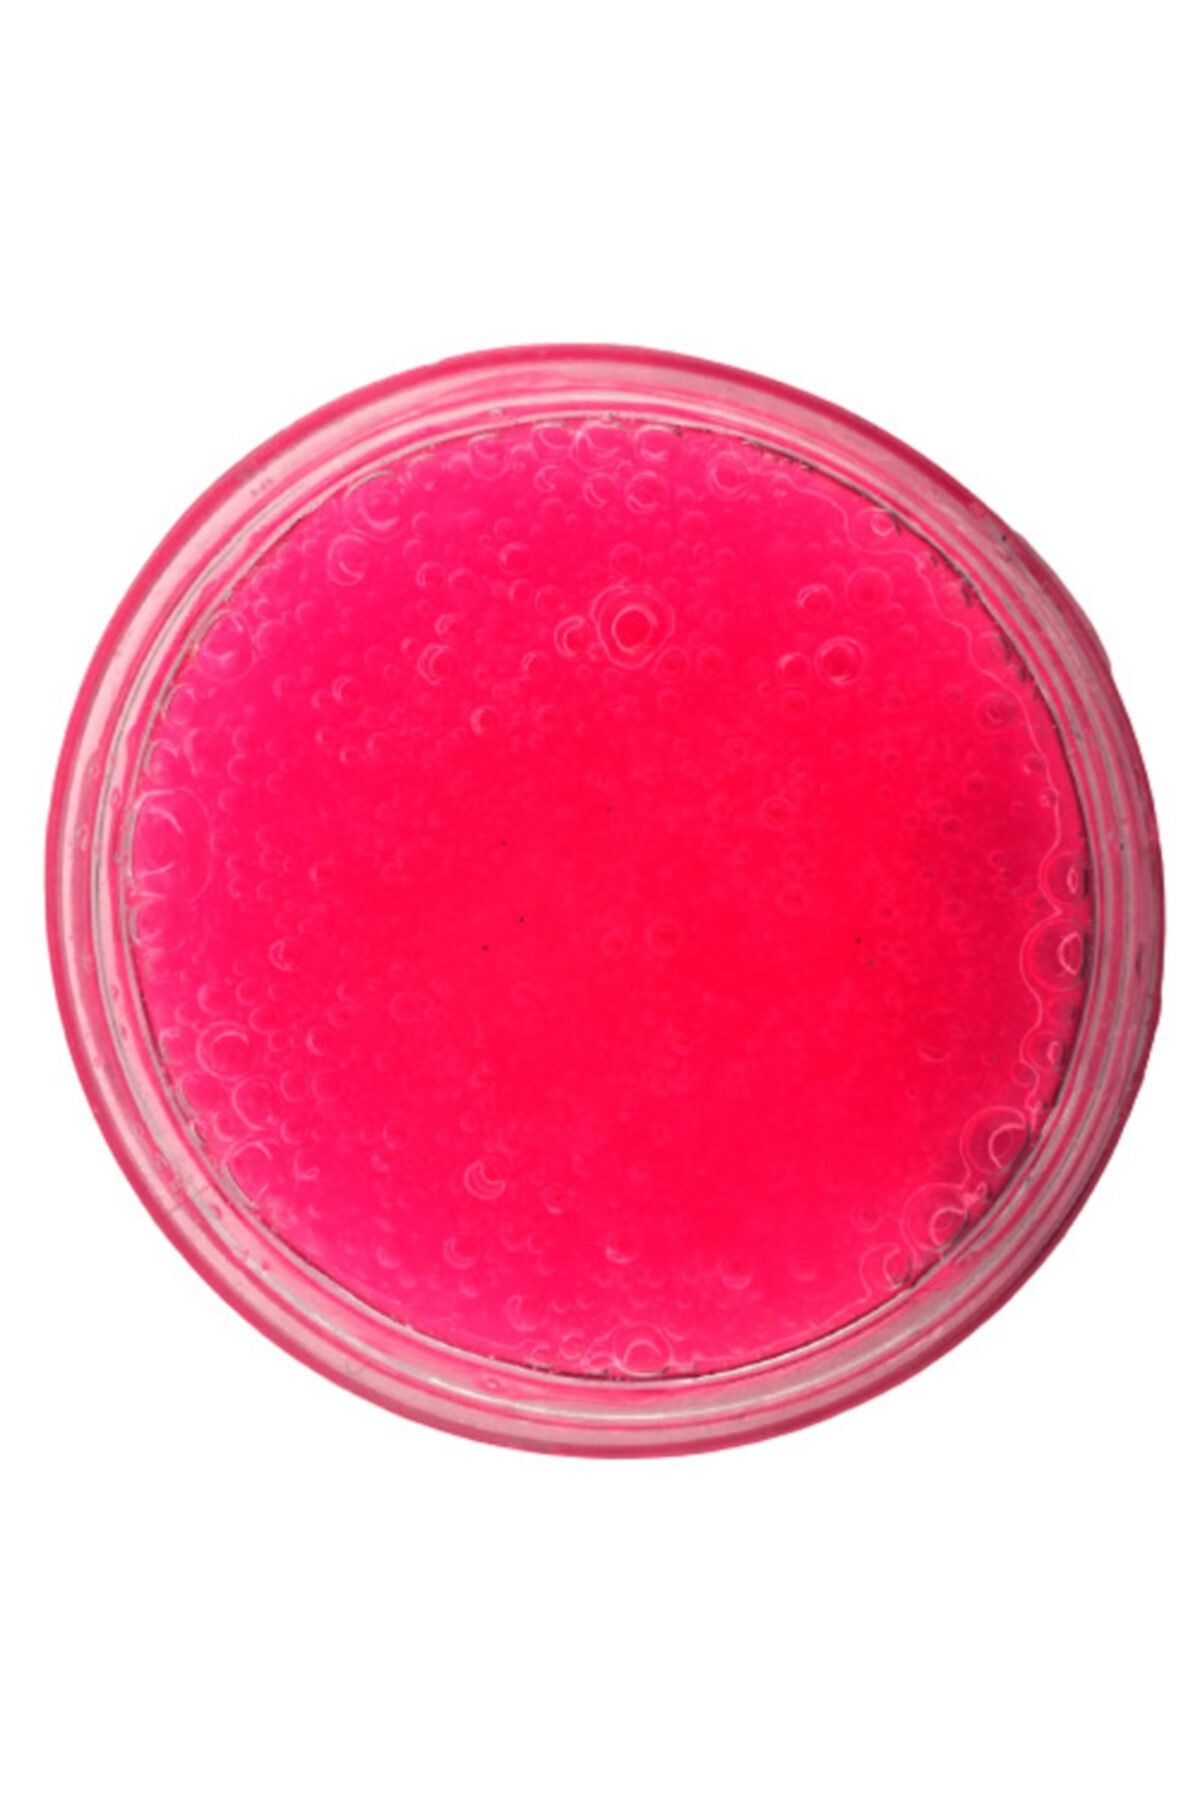 Slimewapi Jelly Belly Fuşya Slime Seti - 200 ml